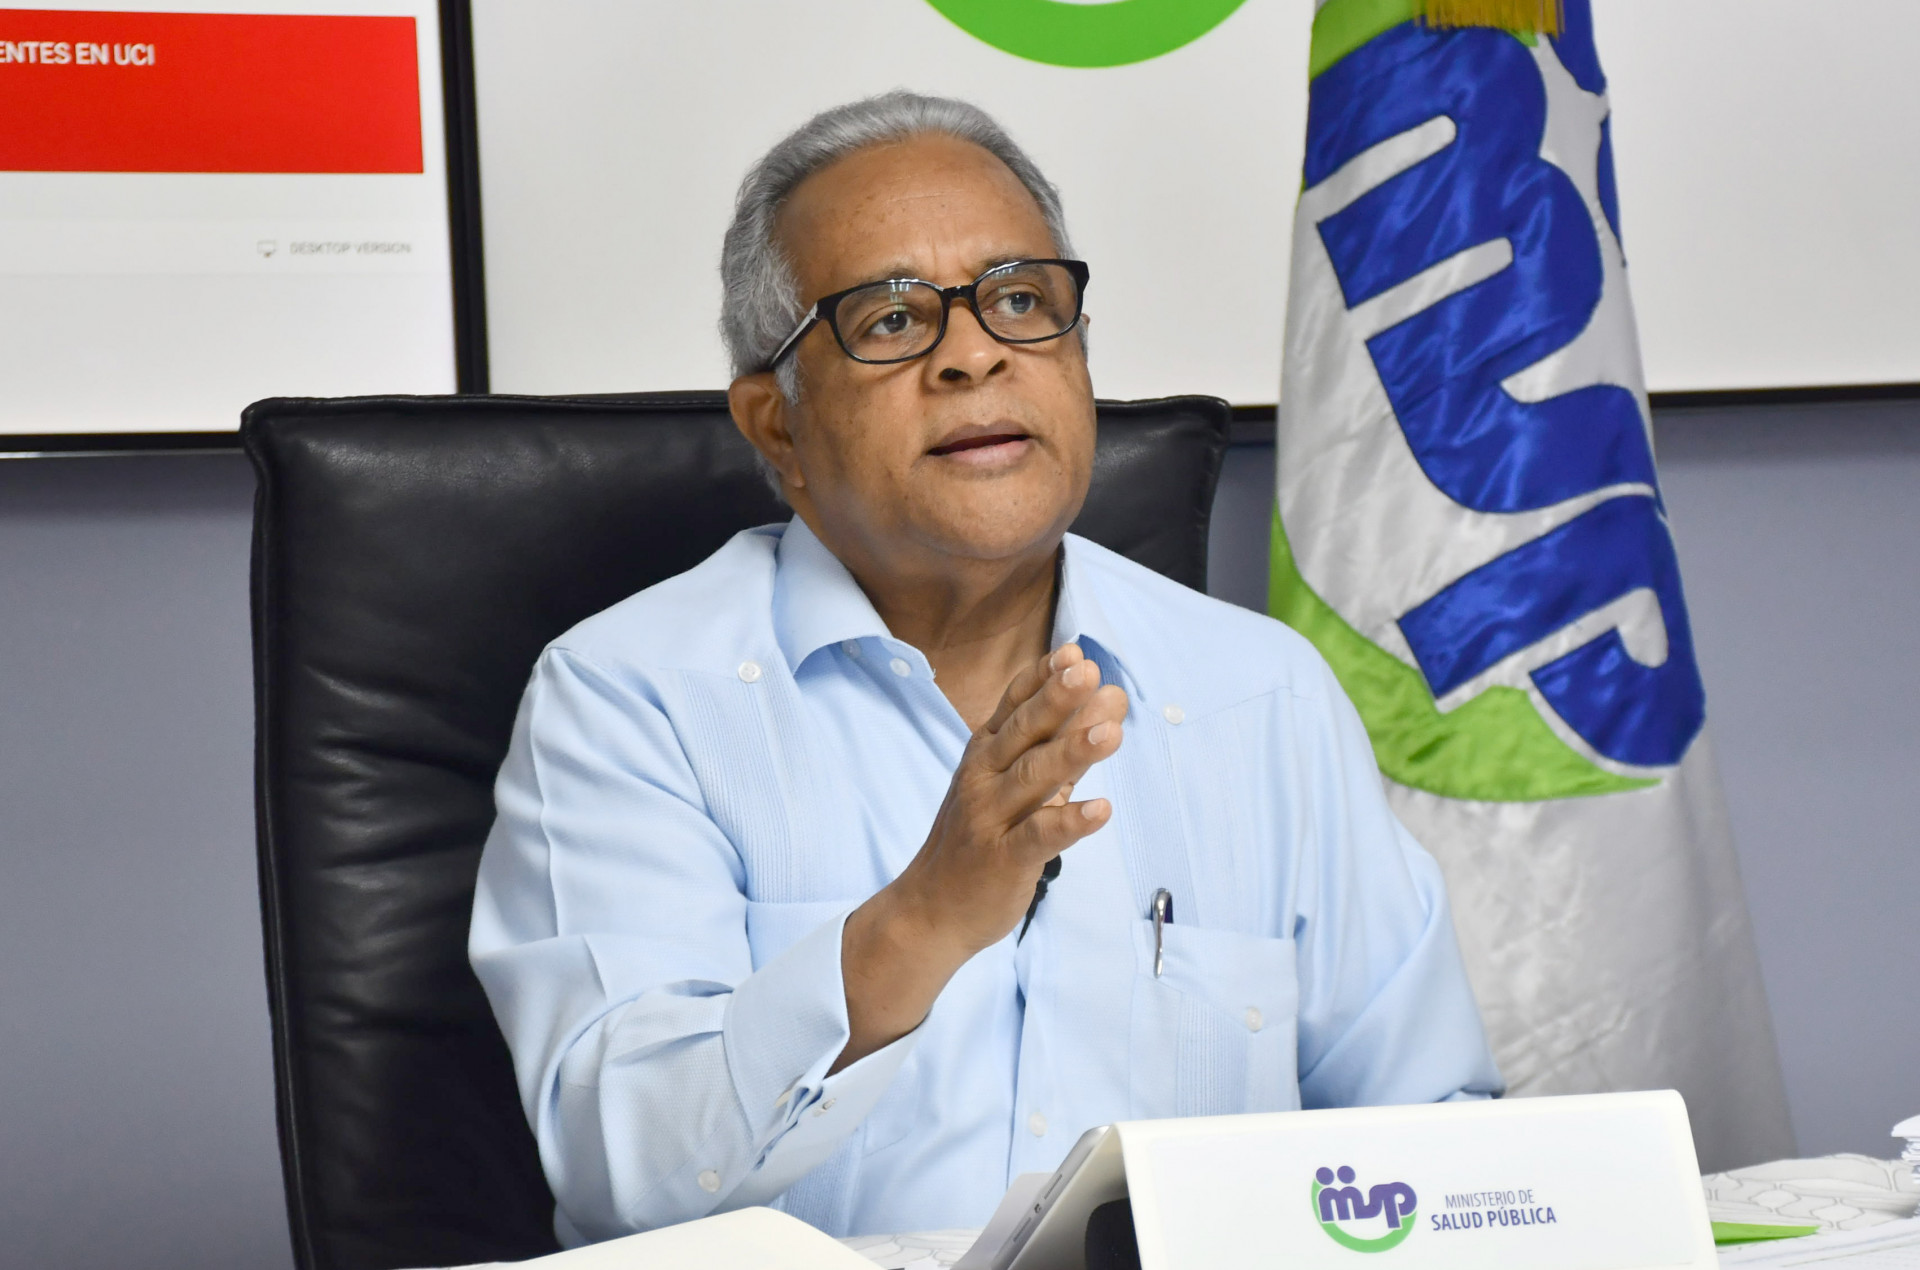 REPÚBLICA DOMINICANA: Salud Pública cerrará establecimientos que permitan aglomeraciones y propondrá medidas adicionales para control de actividades